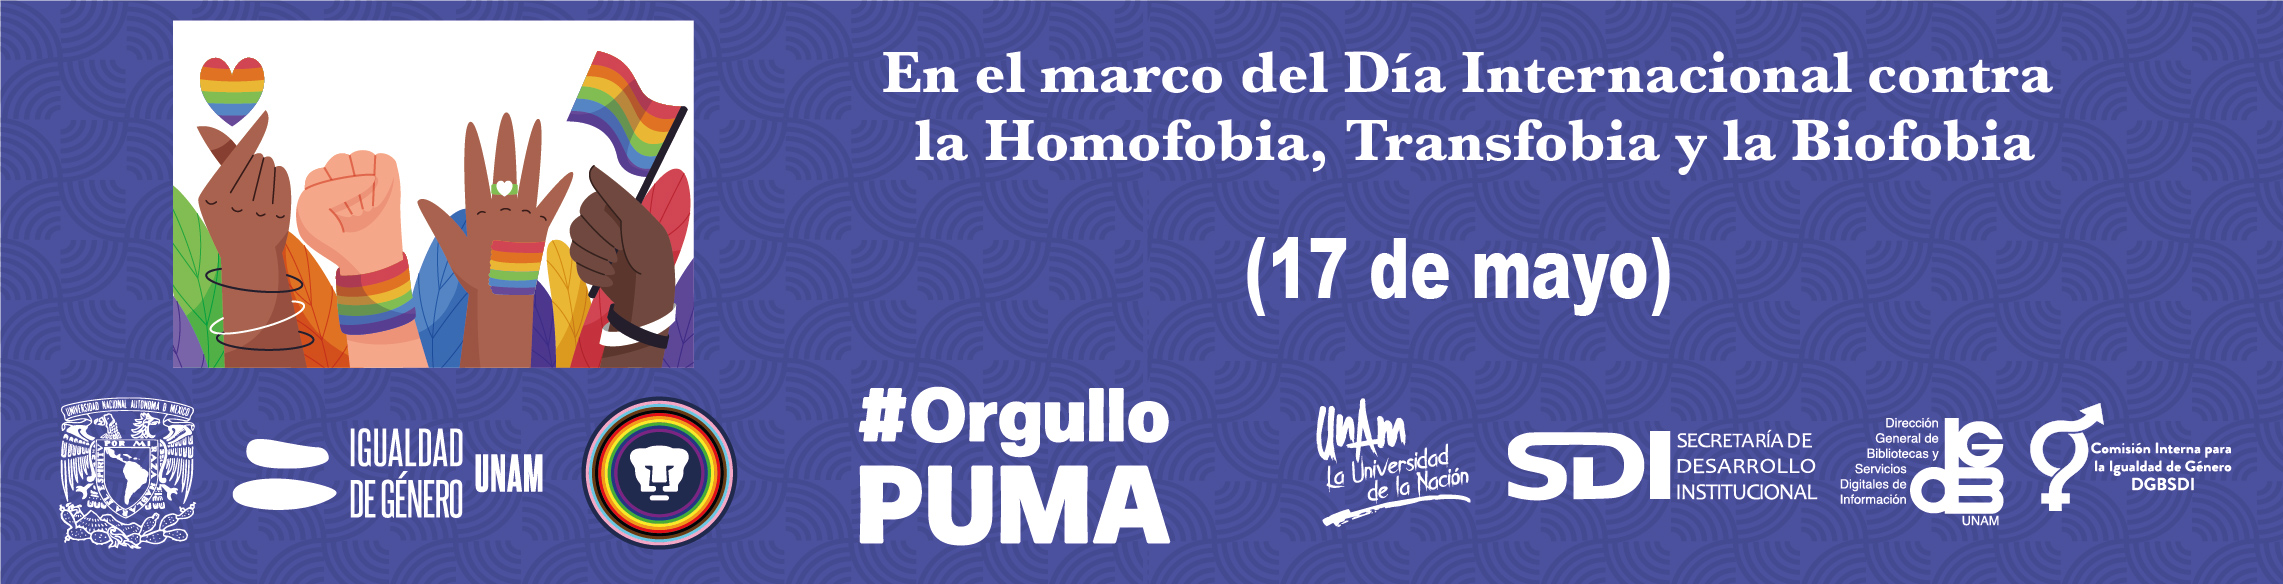 En el marco del Día Internacional contra la Homofobia, Transfobia y Bifobia (17 de mayo)